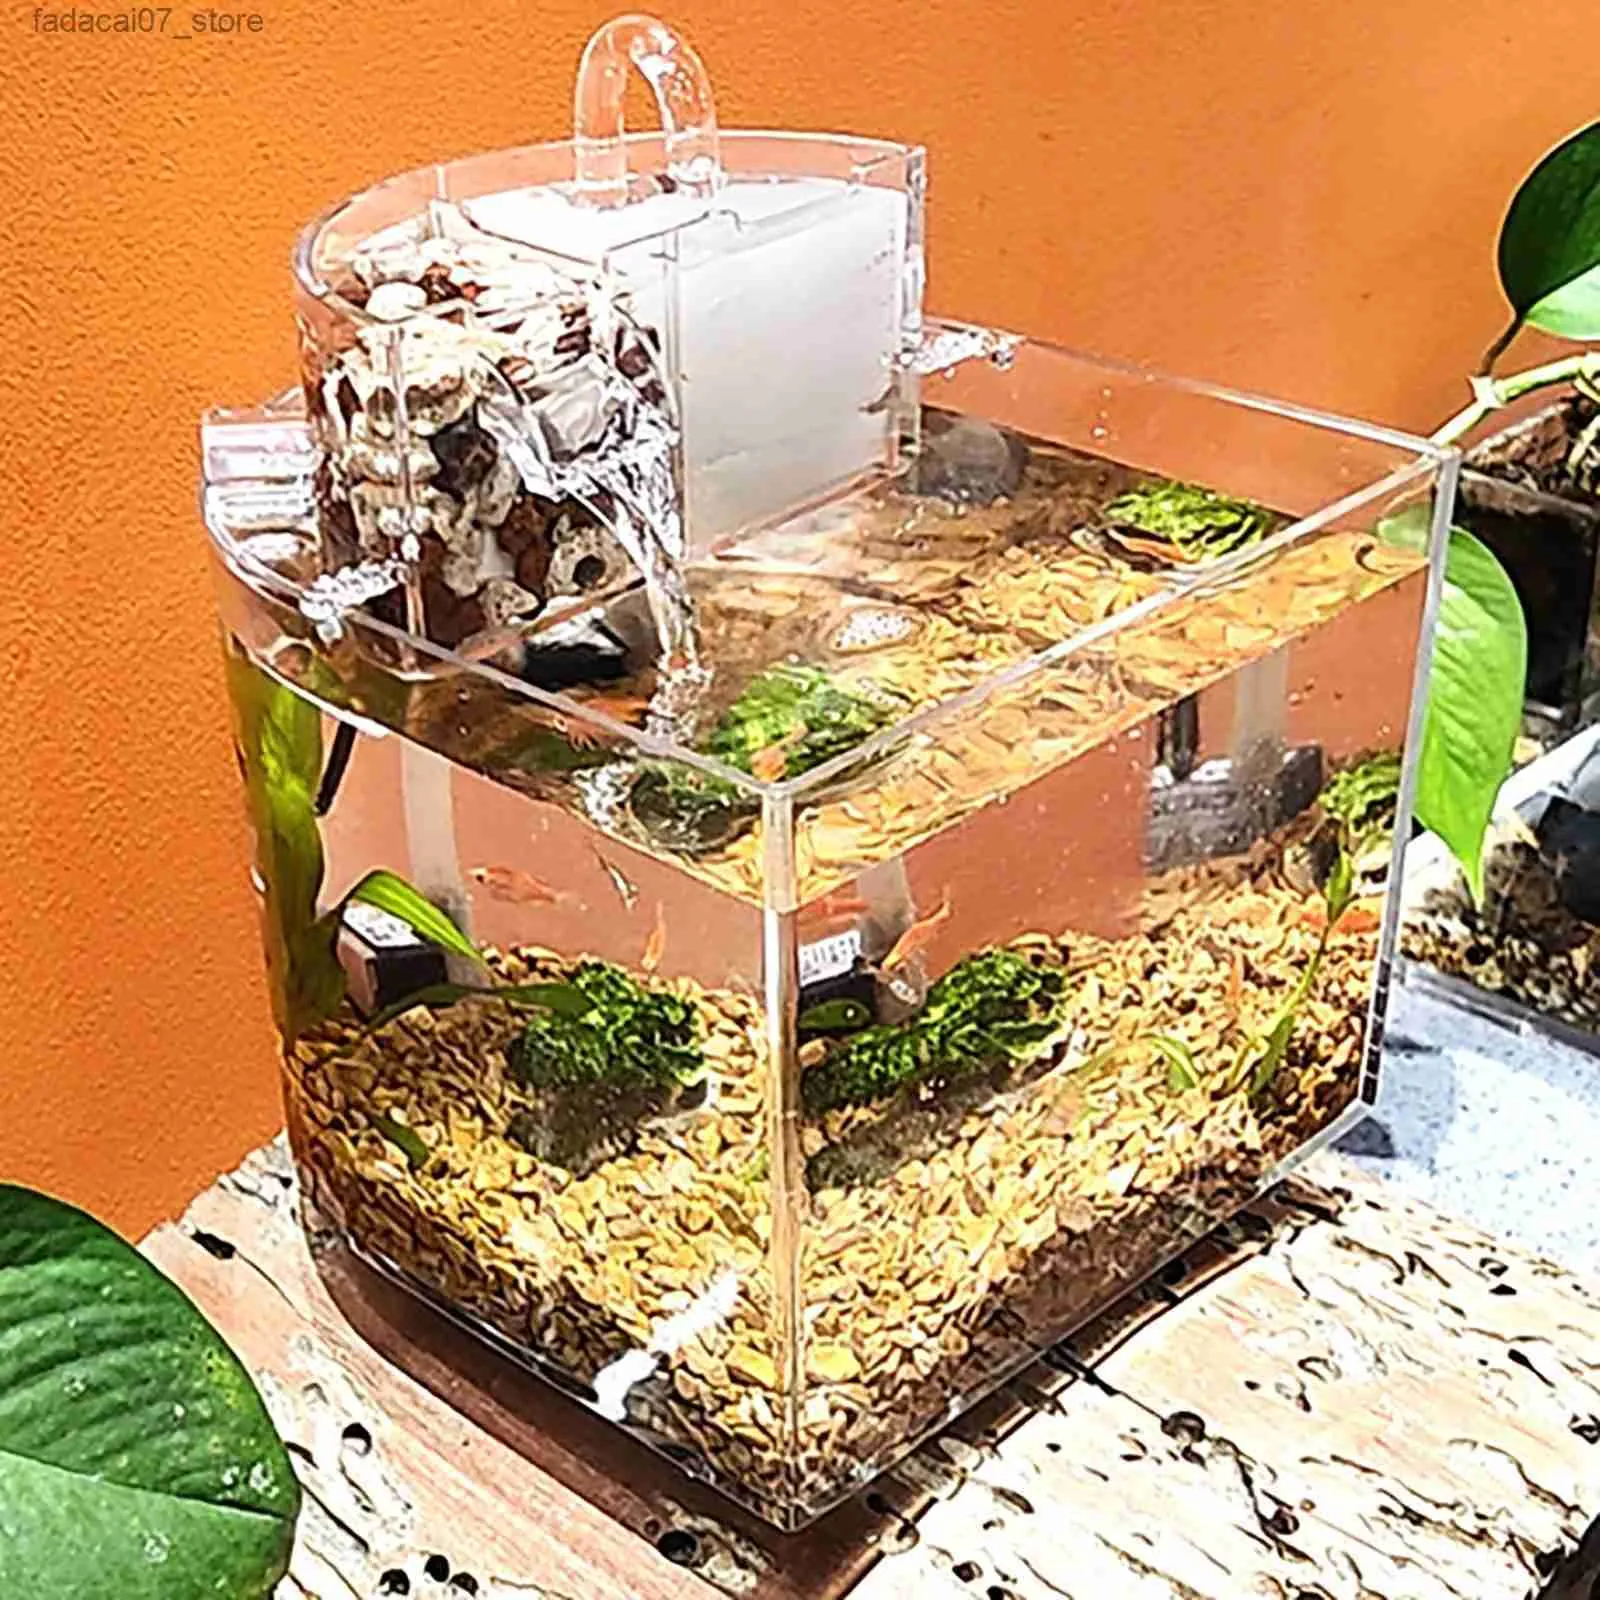 Portable Mini Acrylic Aquarium With Transparent Fish Aquarium Keeper, Quiet  Pump Filter, And Cotton Tank For Betta, Tropical Fish Aquarium, Fish  Aquarium YQ231018 From Fadacai07, $25.38